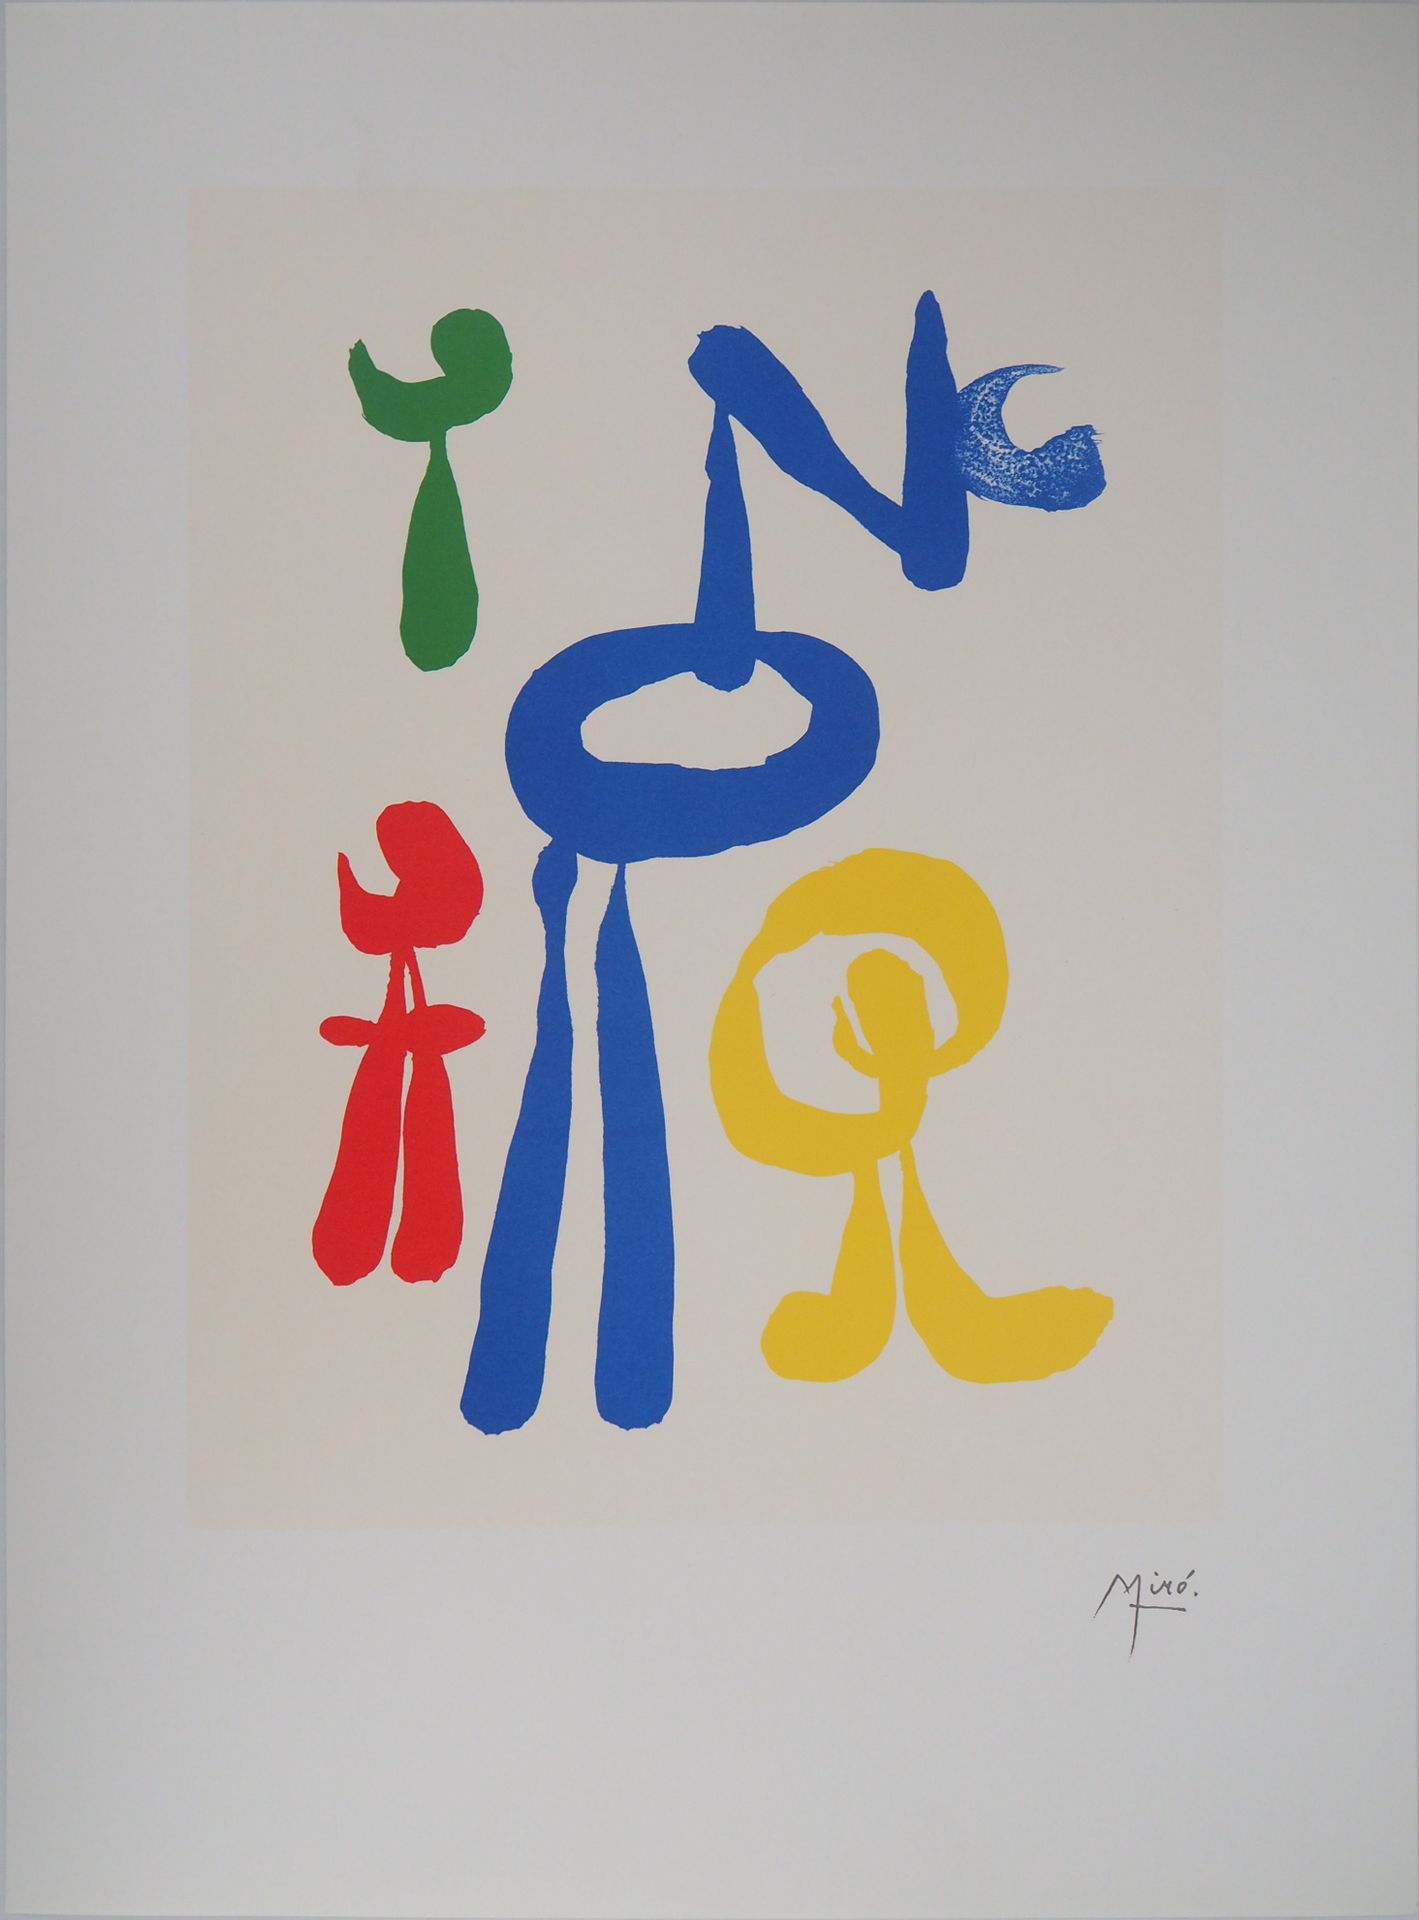 Joan Miro 琼-米罗(1893-1983)(后)

超现实主义的梦

石版画（在Arte（巴黎）/Maeght工作室印制

板块中的签名

牛皮纸上 6&hellip;